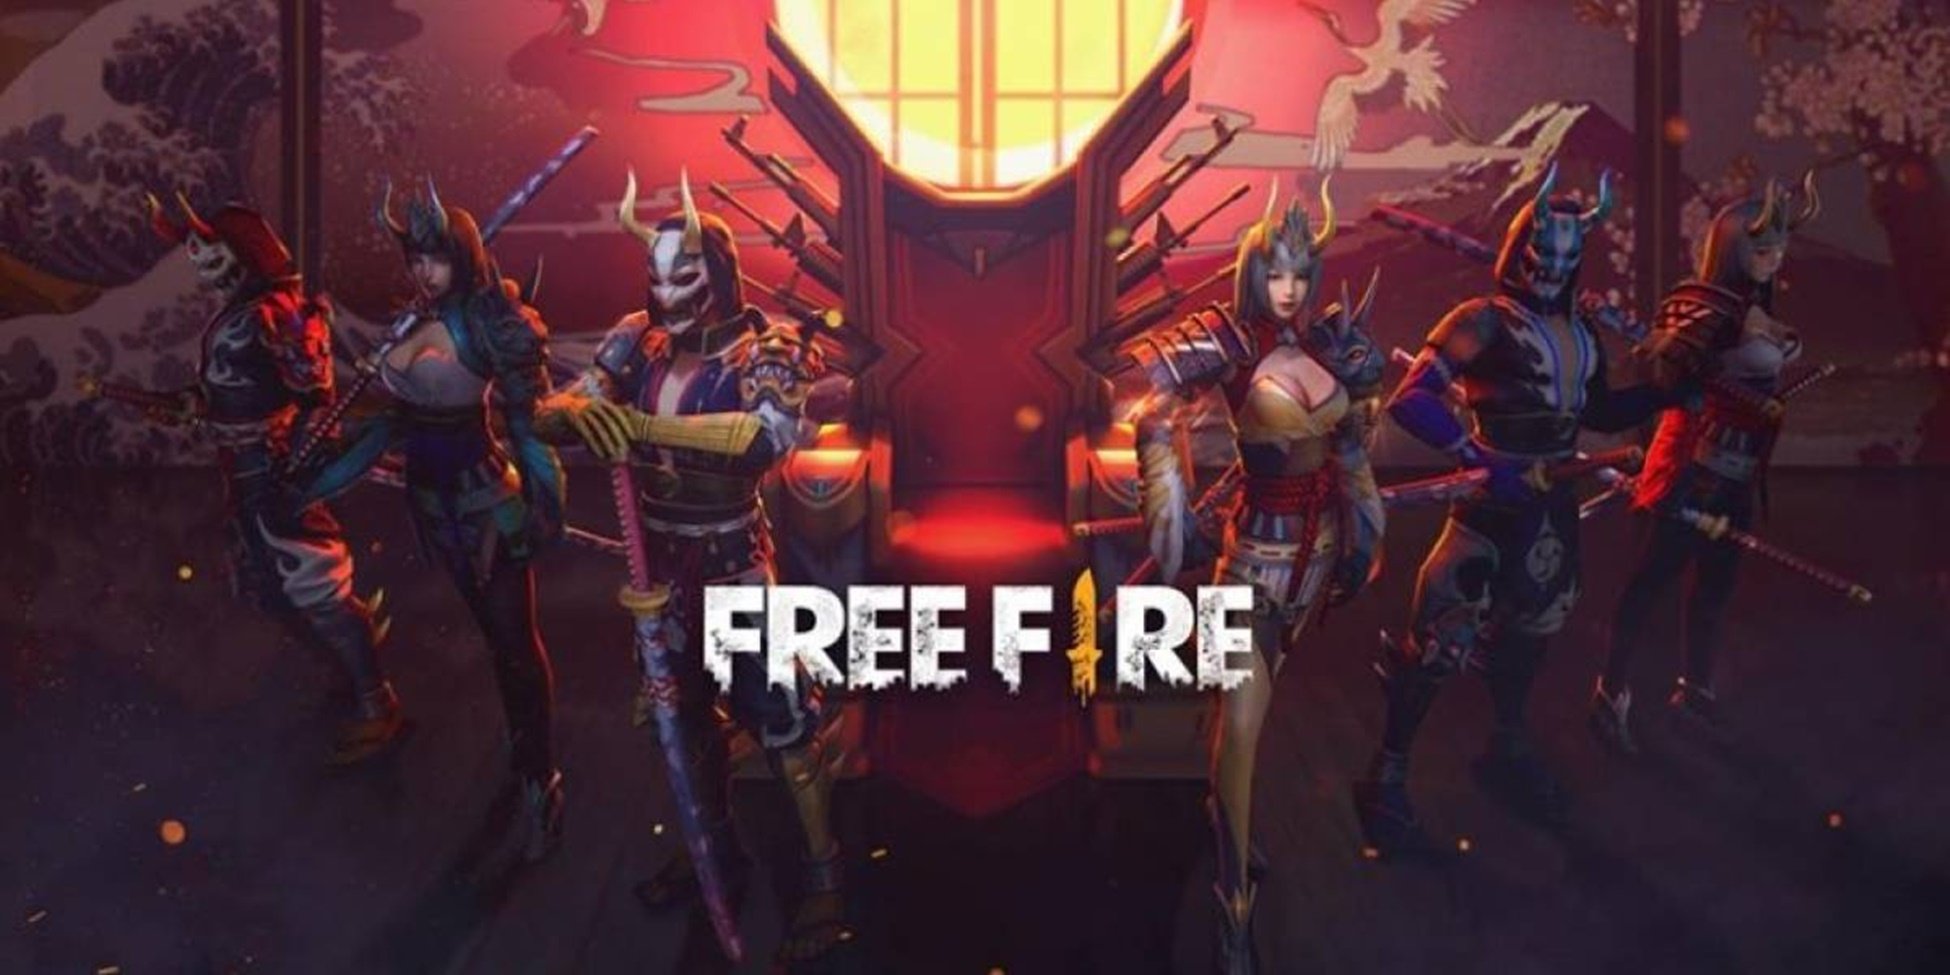 Como desconectar o Facebook do Free Fire e outros jogos para